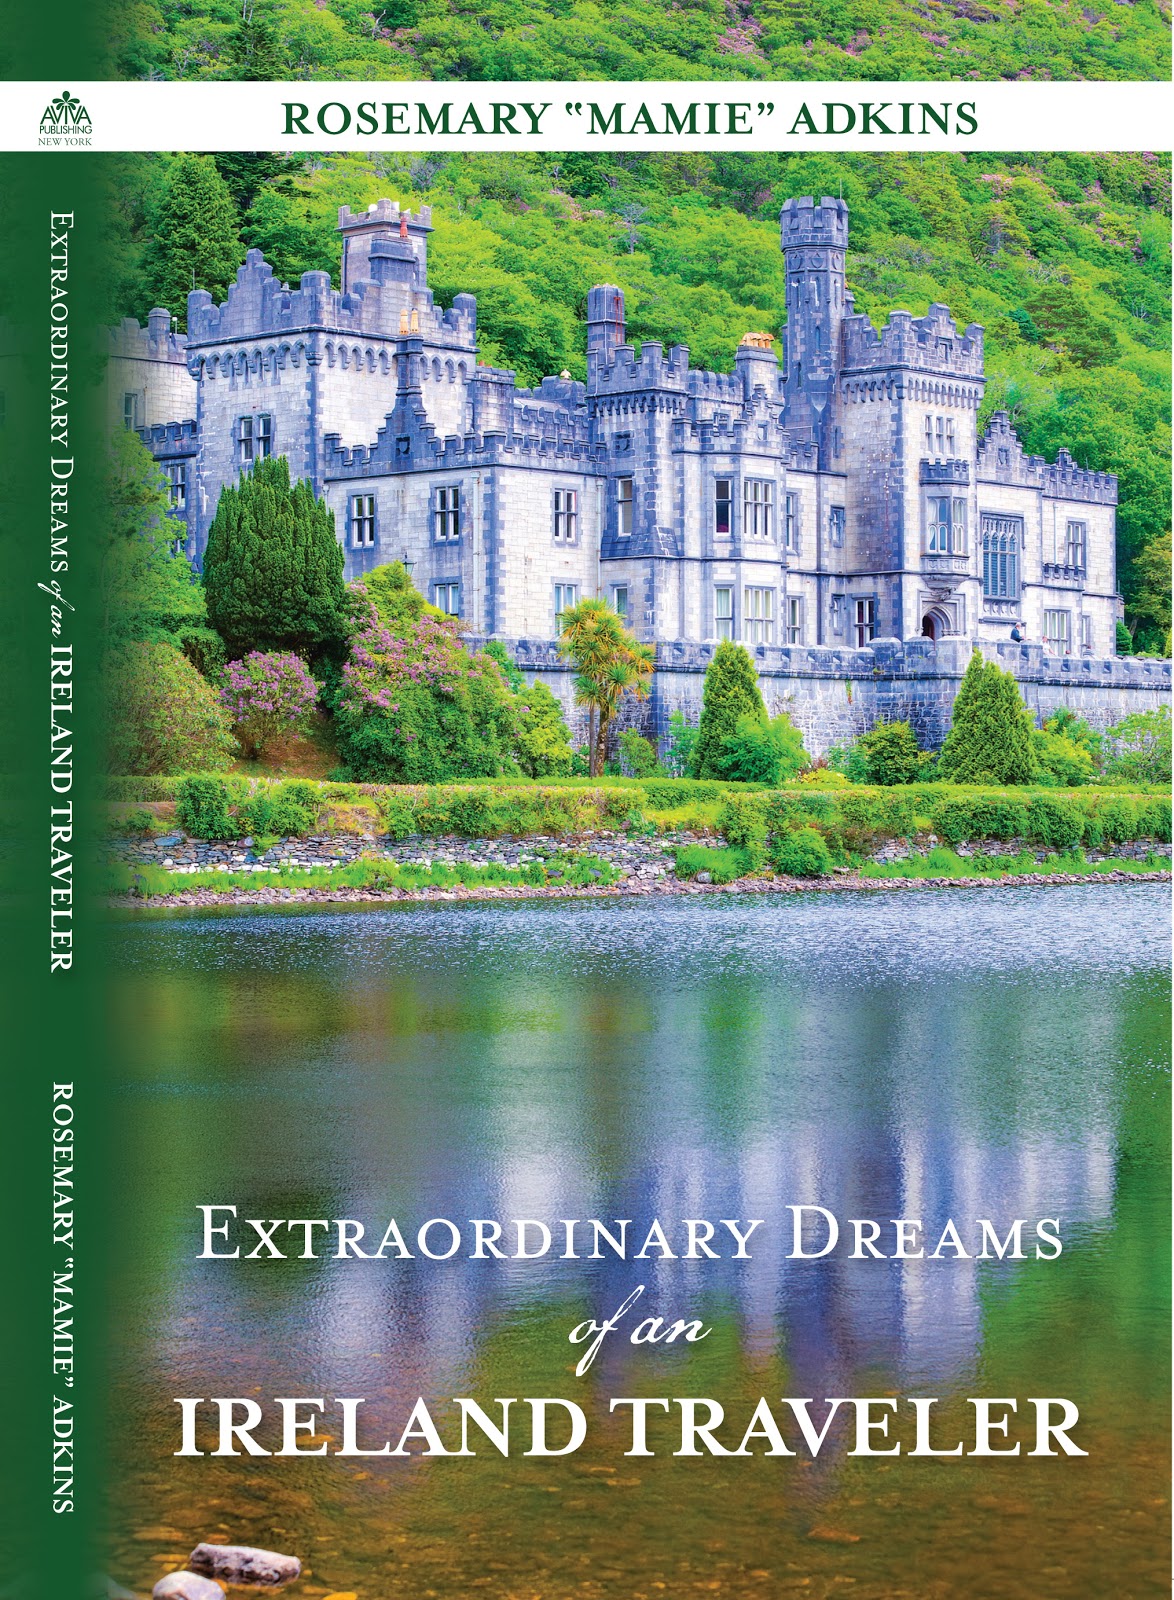 Extraordinary Dreams of an Ireland Traveler Rosemary 